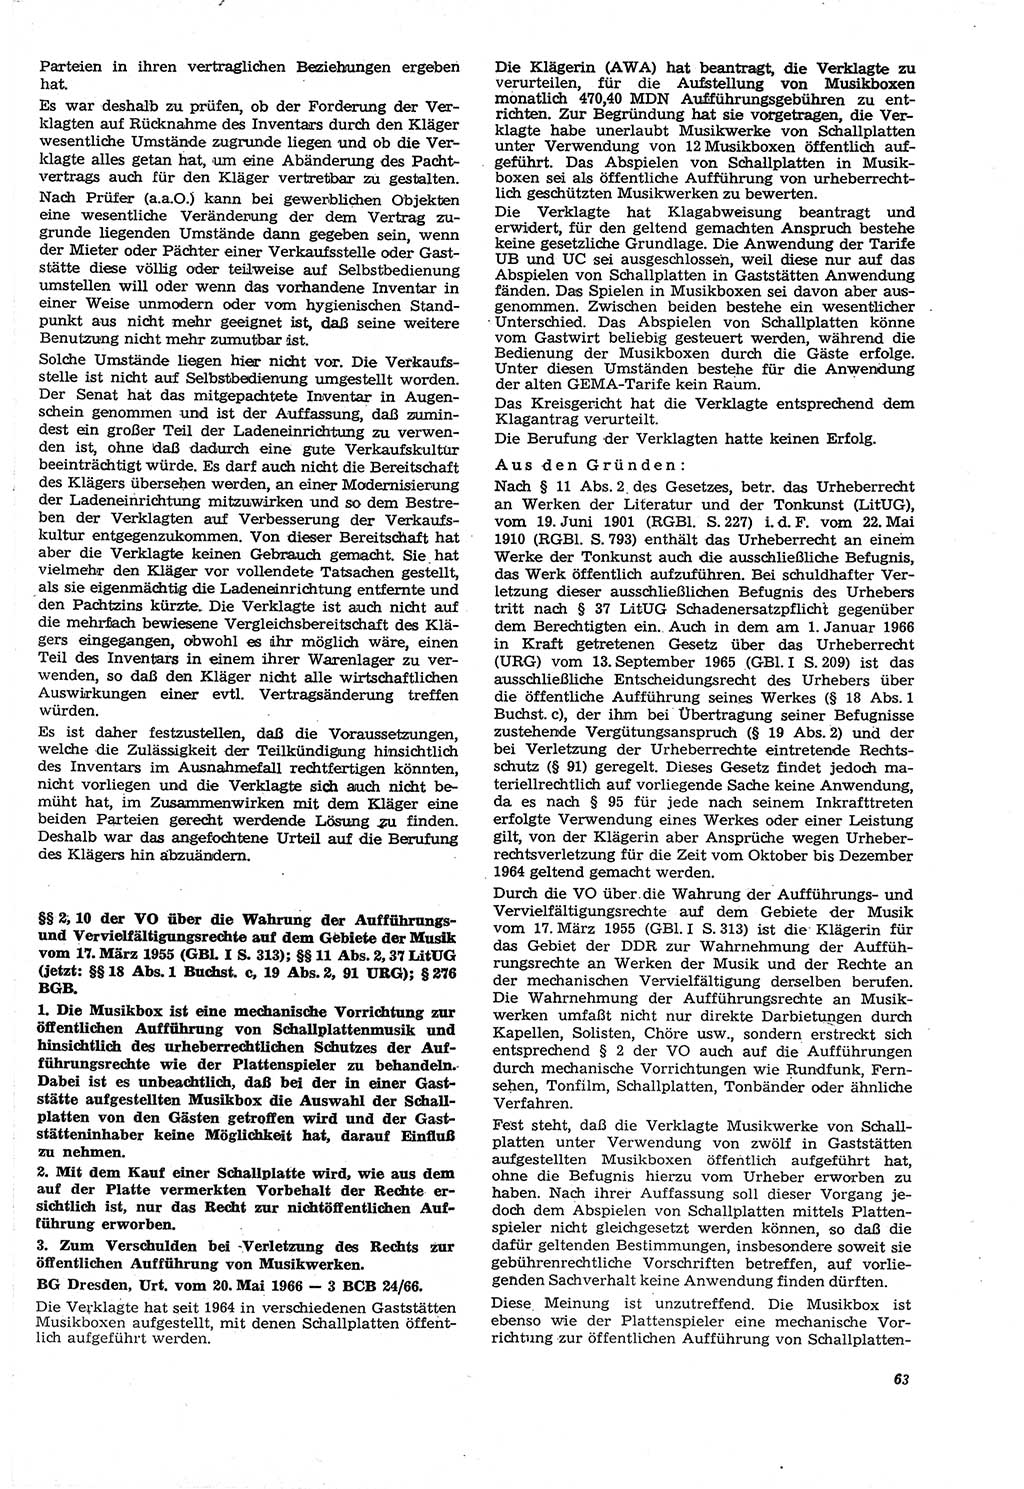 Neue Justiz (NJ), Zeitschrift für Recht und Rechtswissenschaft [Deutsche Demokratische Republik (DDR)], 21. Jahrgang 1967, Seite 63 (NJ DDR 1967, S. 63)